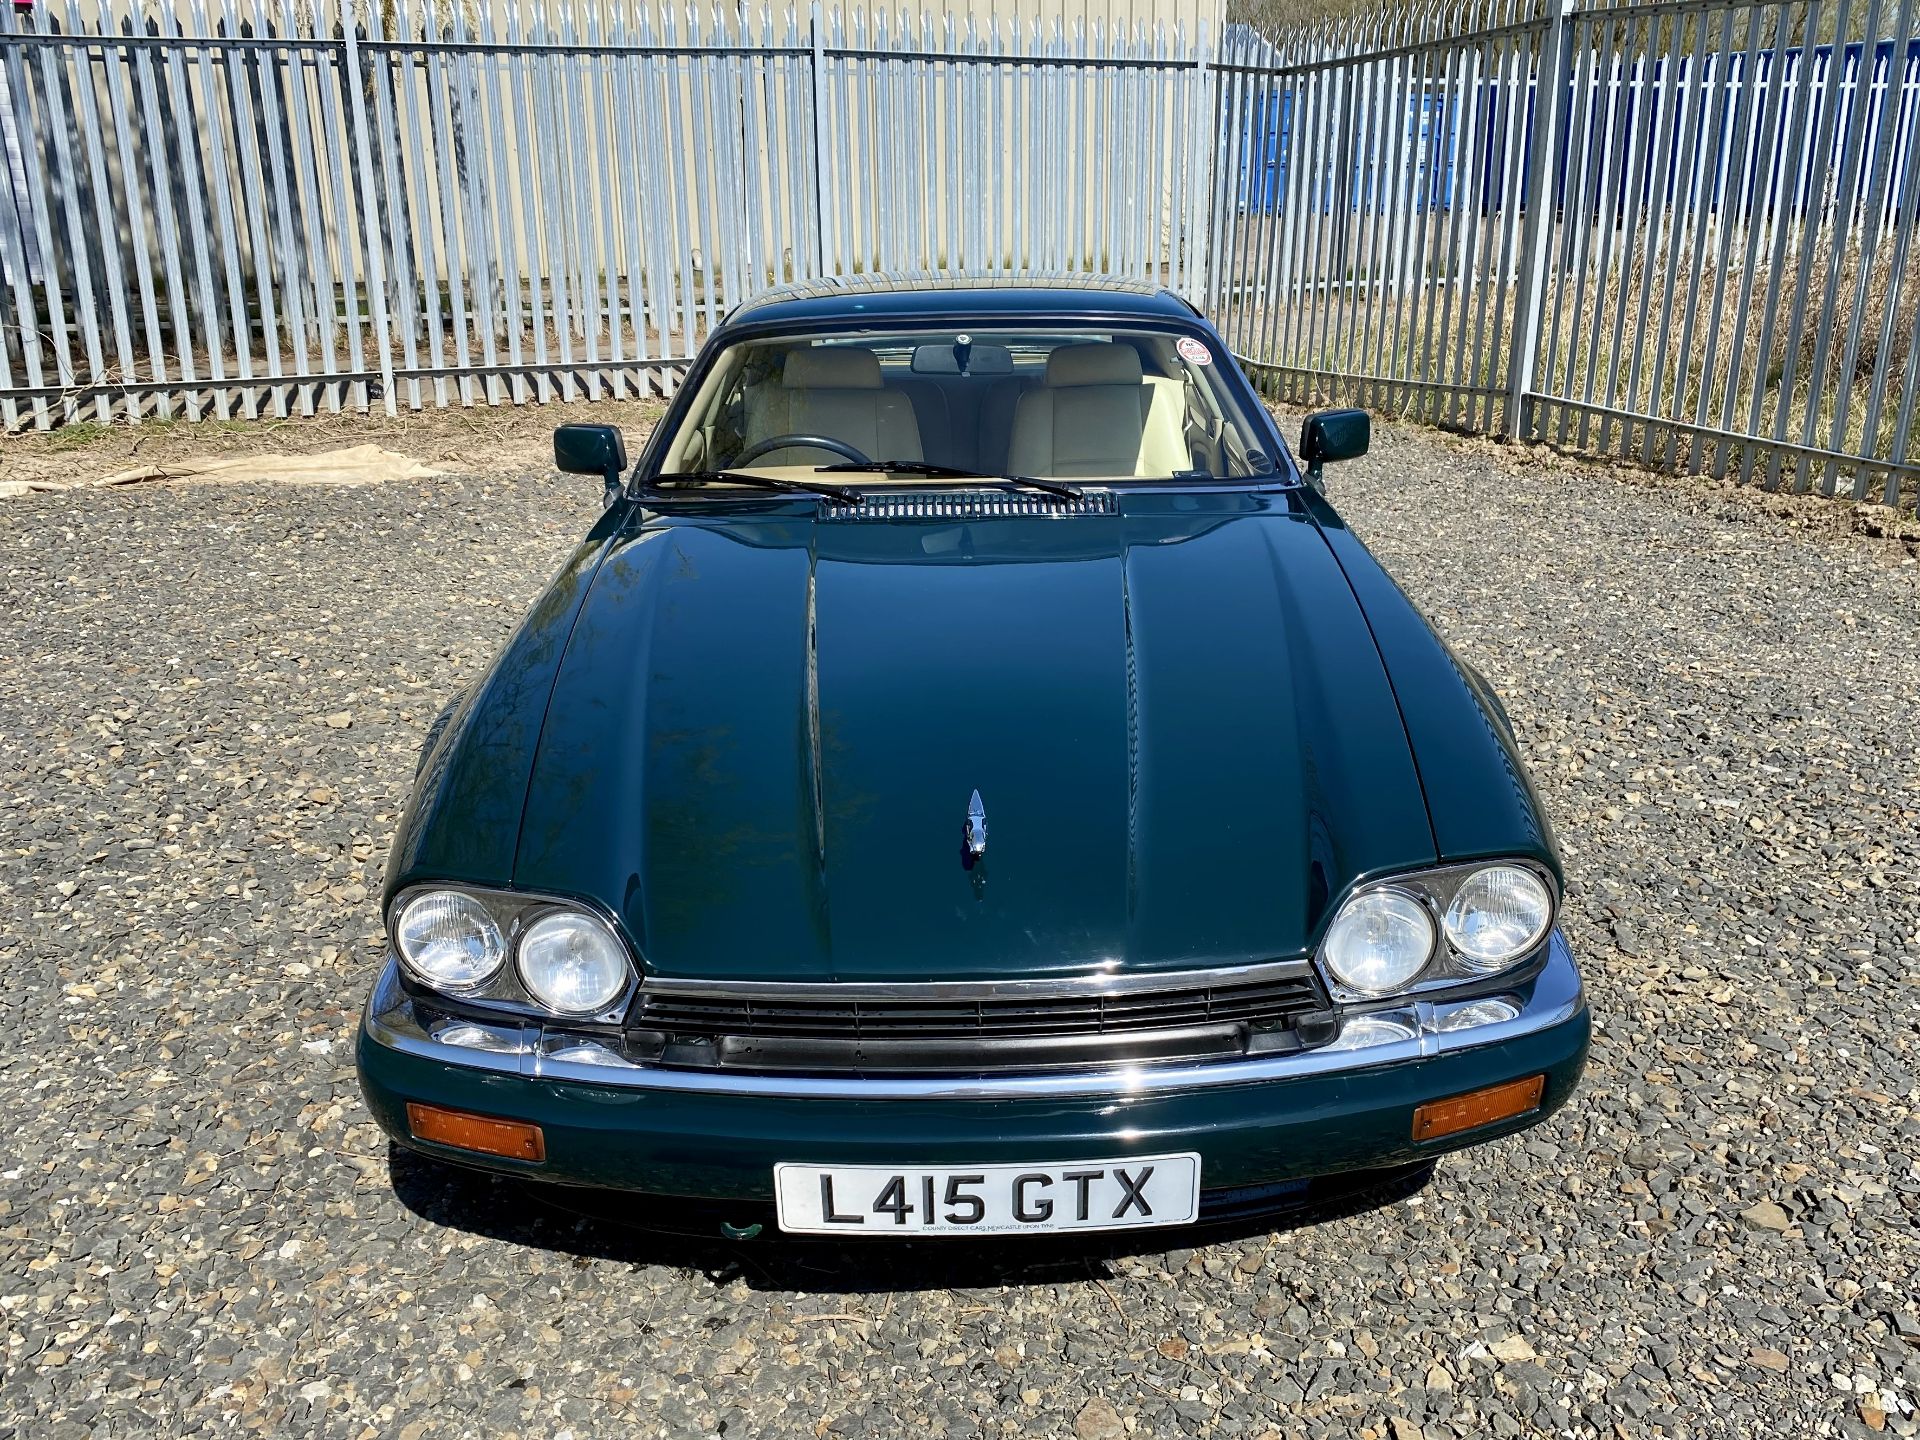 Jaguar XJS 4.0 Coupe - Image 17 of 64